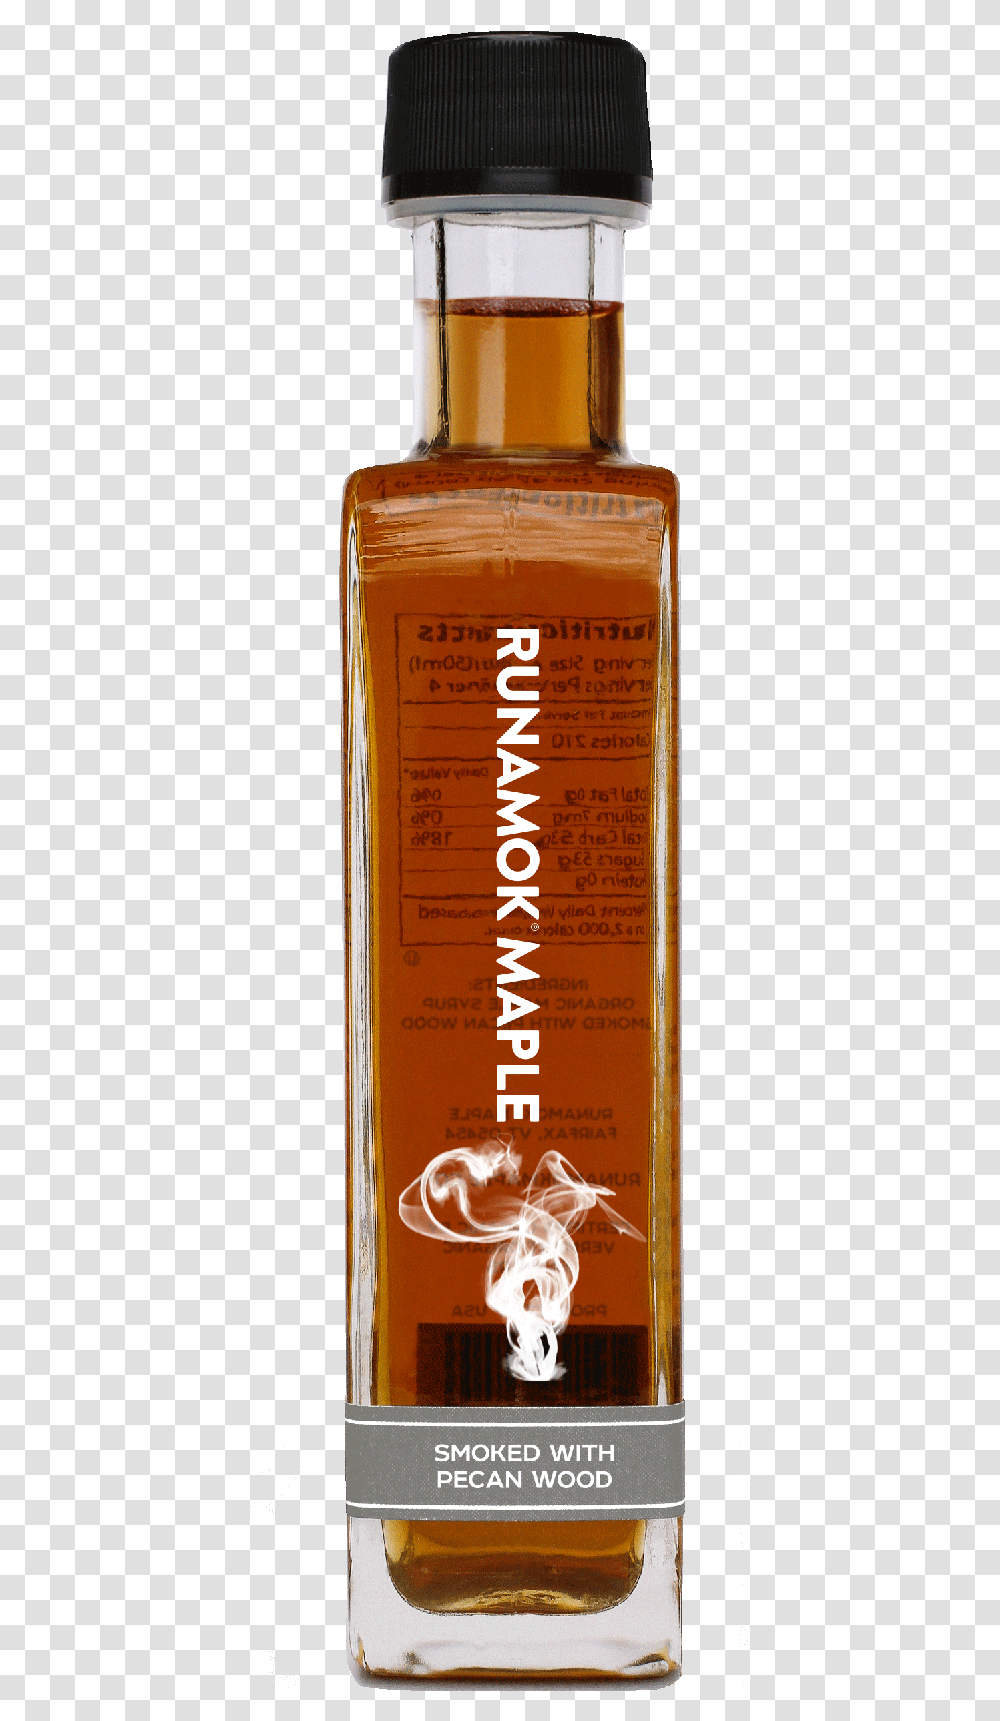 Rum Barrel Aged Maple Syrup, Liquor, Alcohol, Beverage, Drink Transparent Png